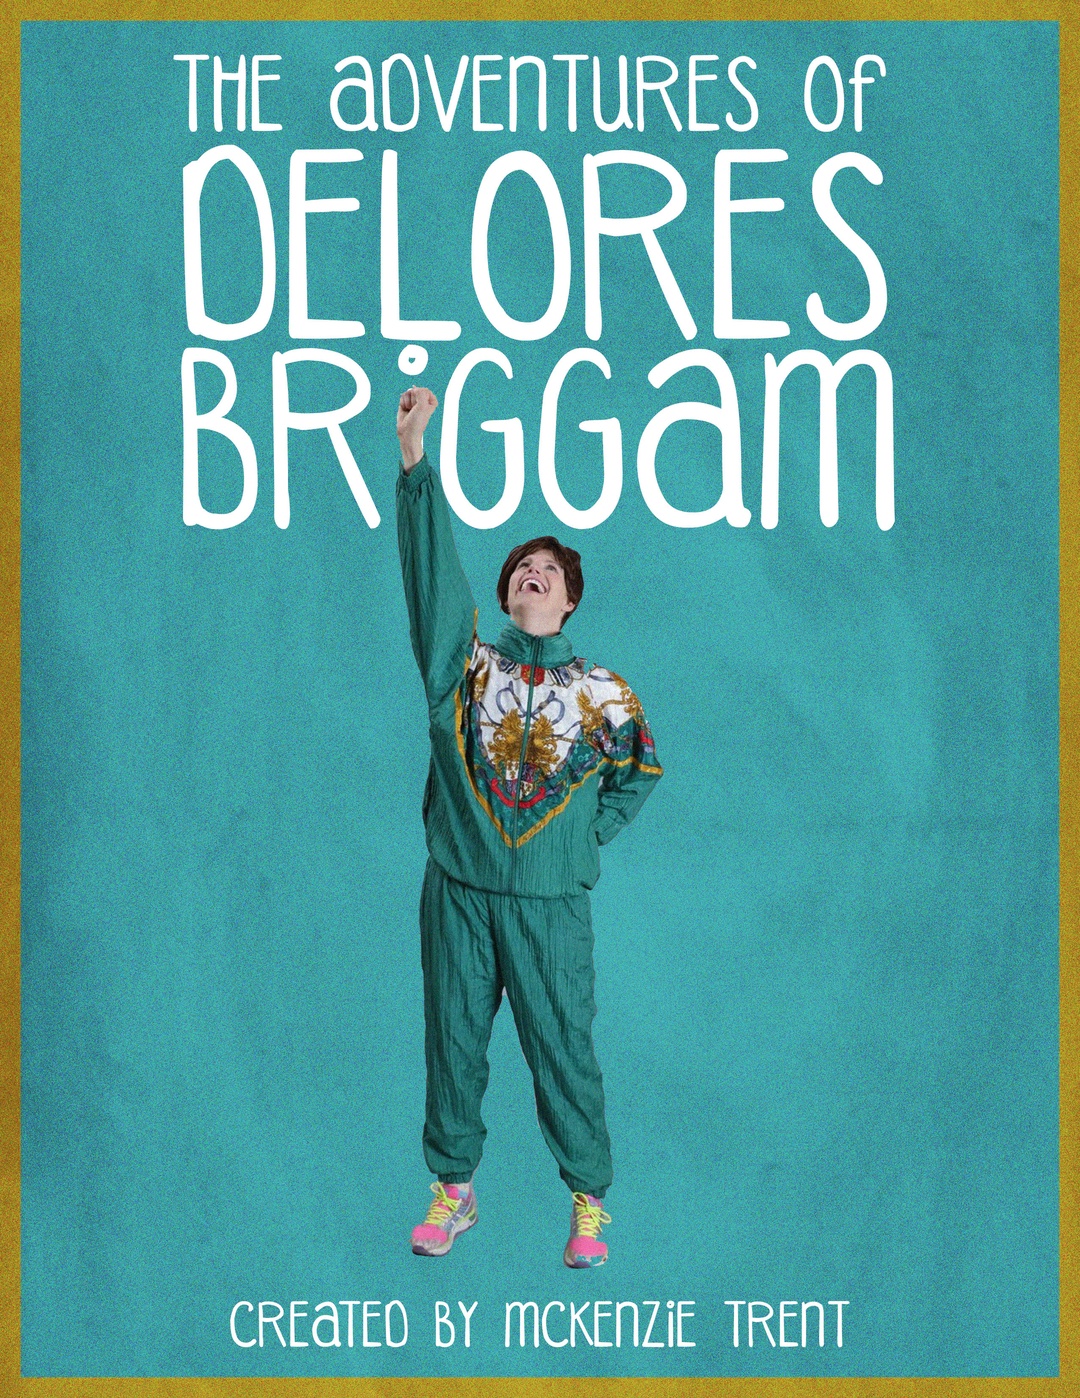 The Adventures of Delores Briggam